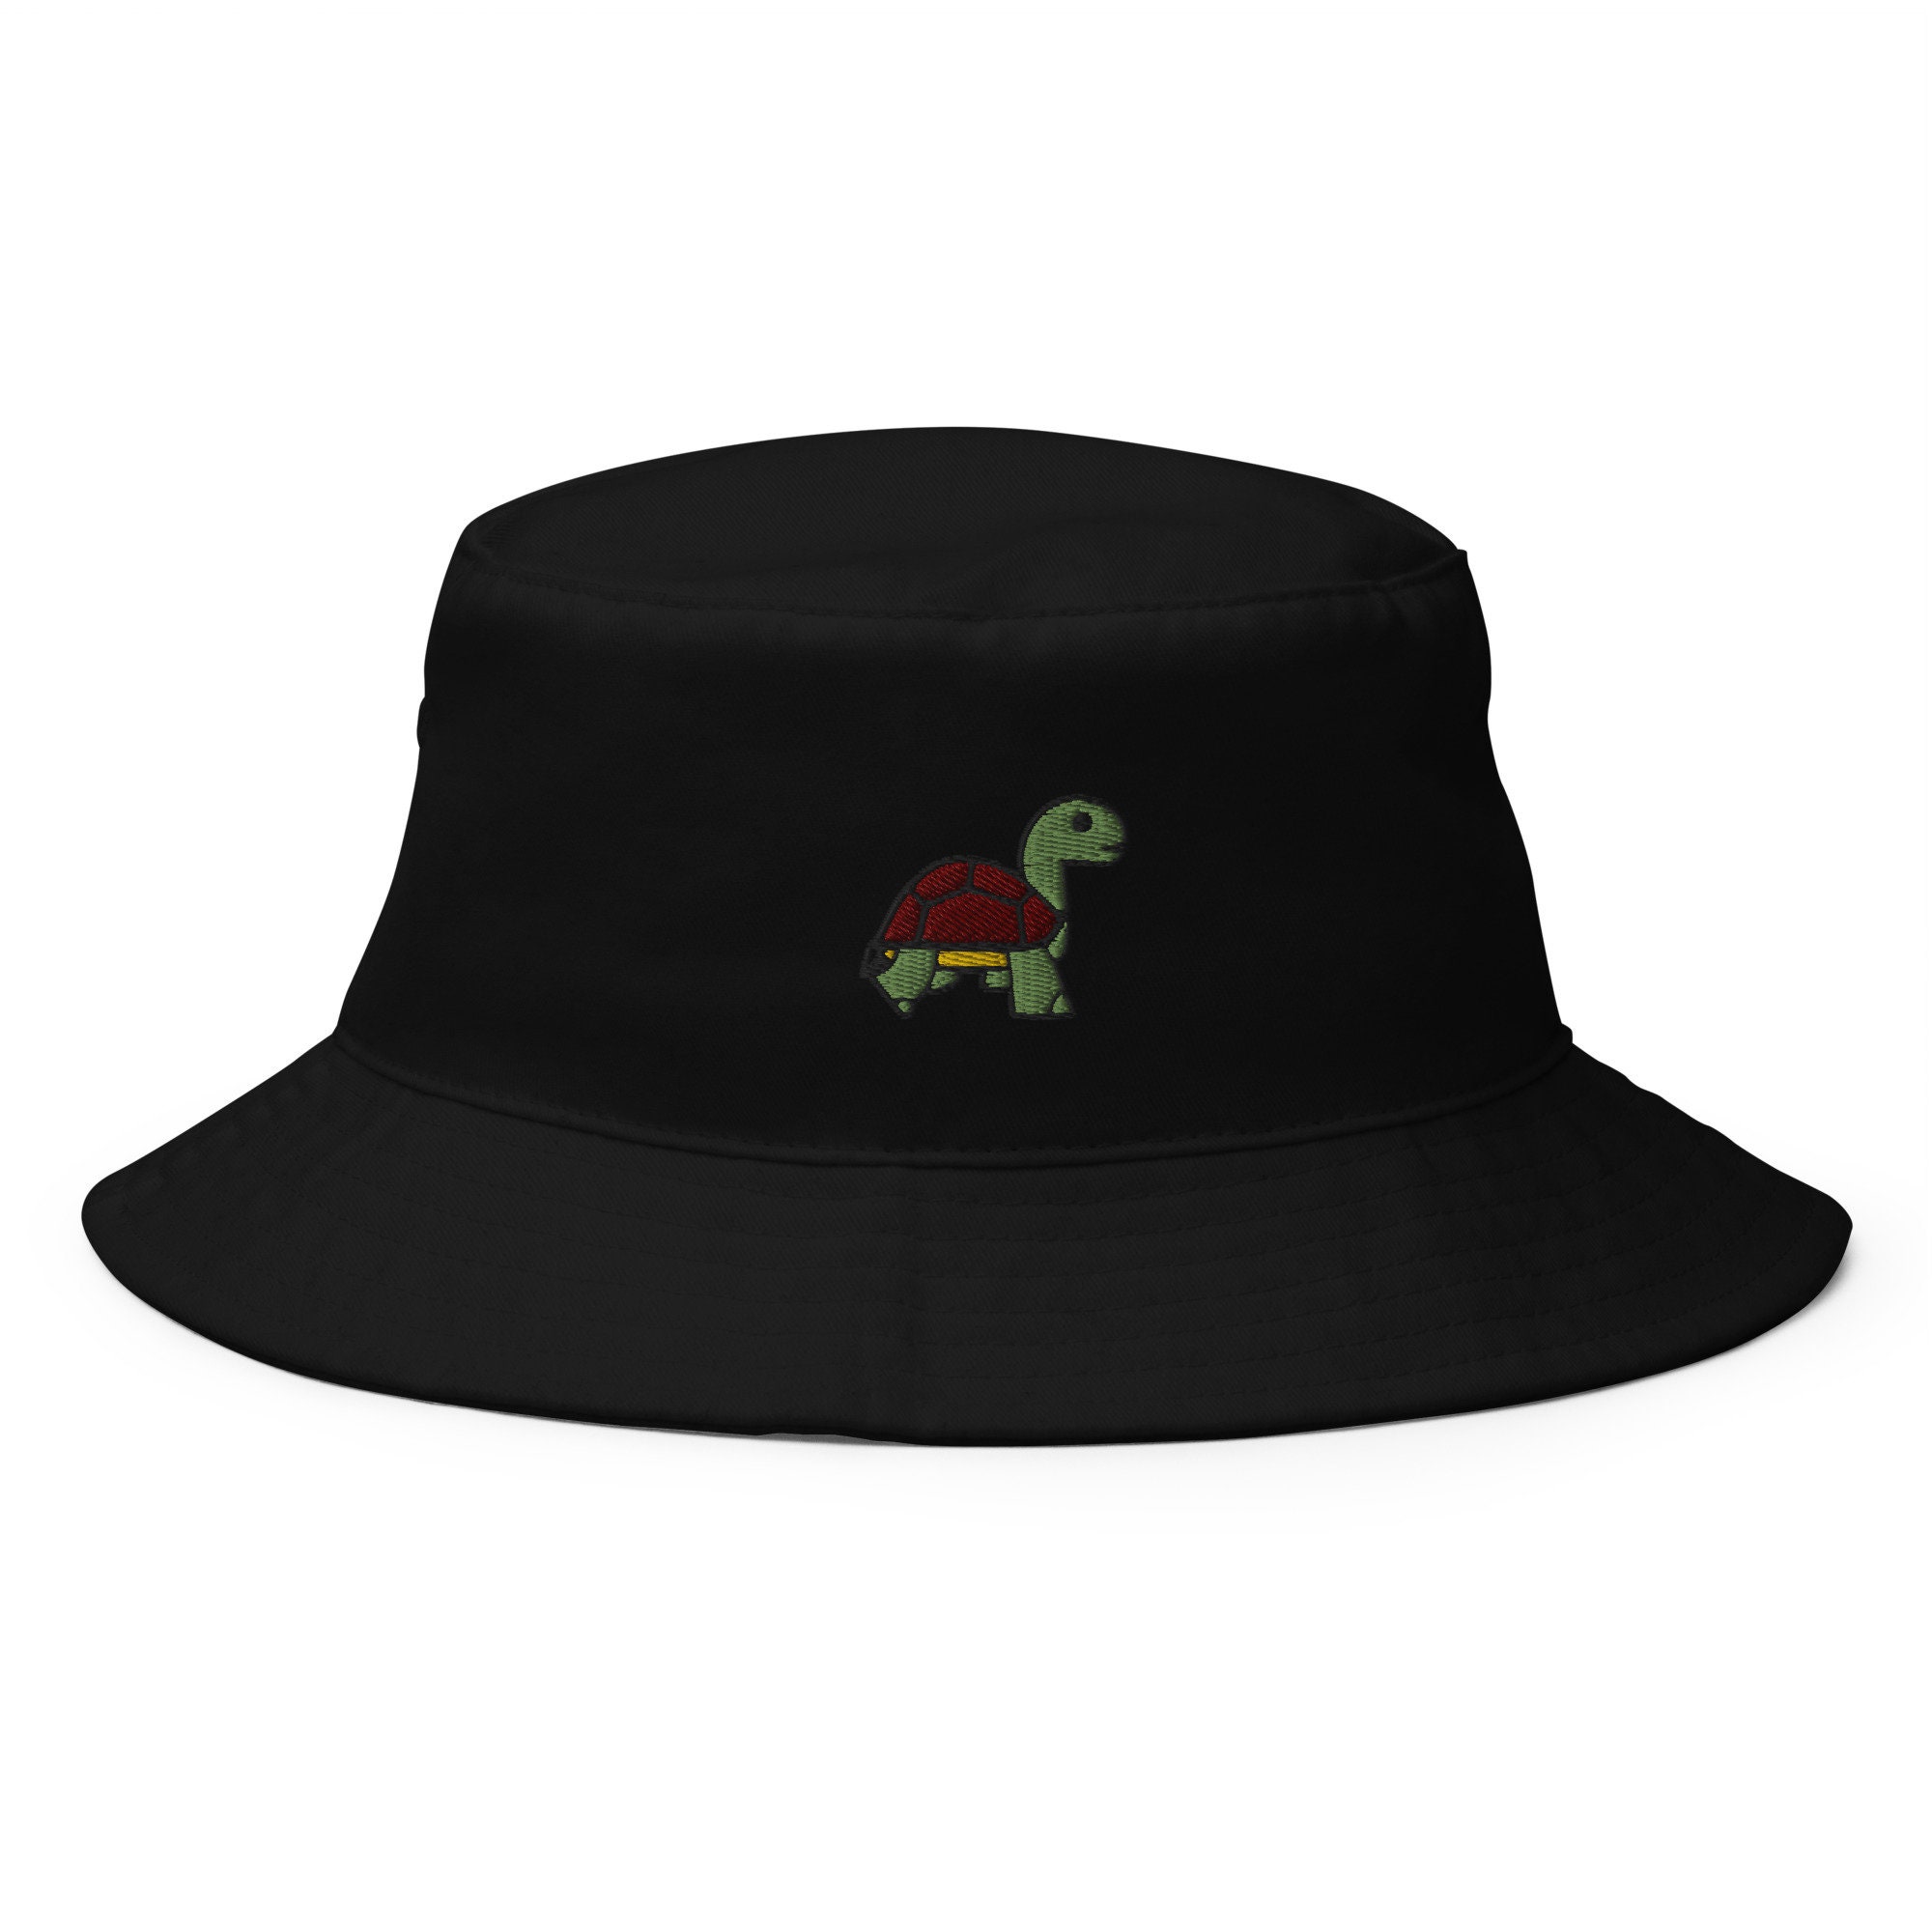 Accesorios Sombreros y gorras Gorros de pesca moda reciclada, sombrero de cubo para hombres sombrero de verano para hombres sombrero rave para hombres sombrero de cubo reversible sombrero raro Sombrero de cubo de tortuga ropa Rave unisex 